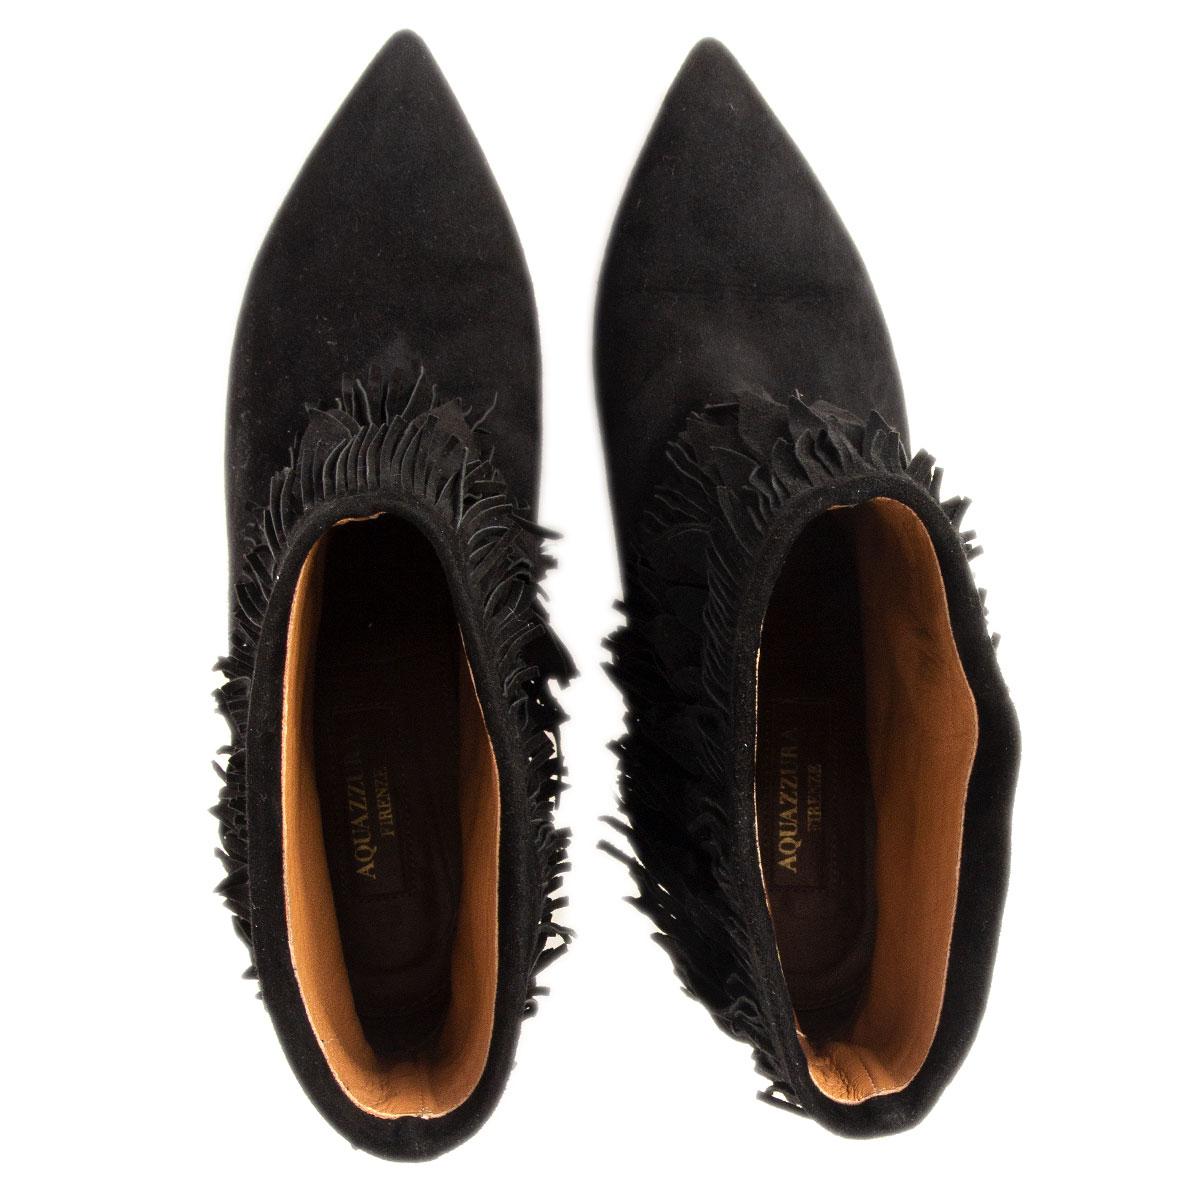 Women's AQUAZZURA black suede SASHA Fringed Ankle Boots Shoes 37.5